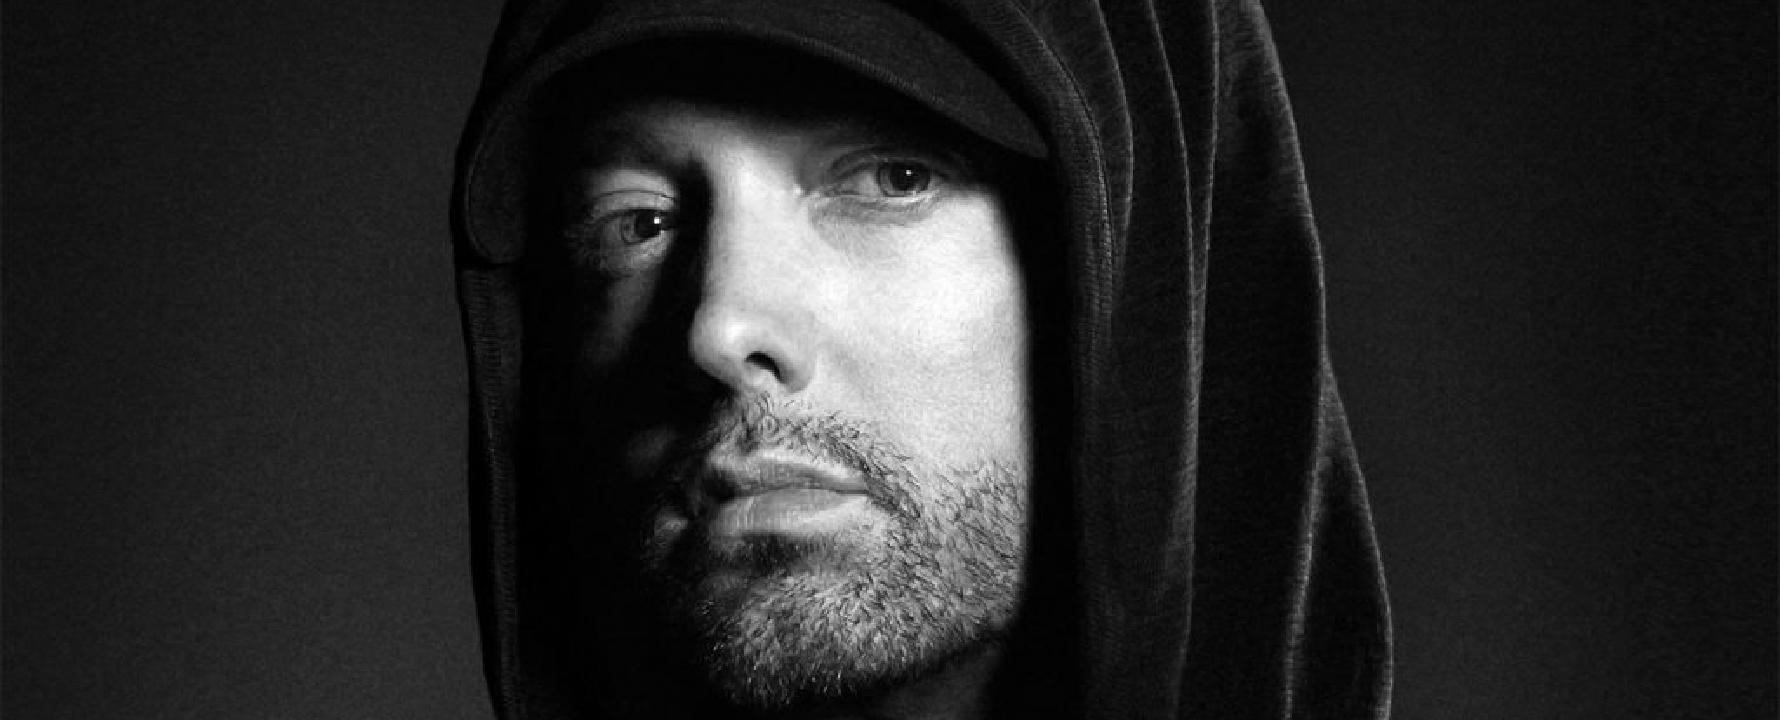 Fotografia promocional de Eminem.